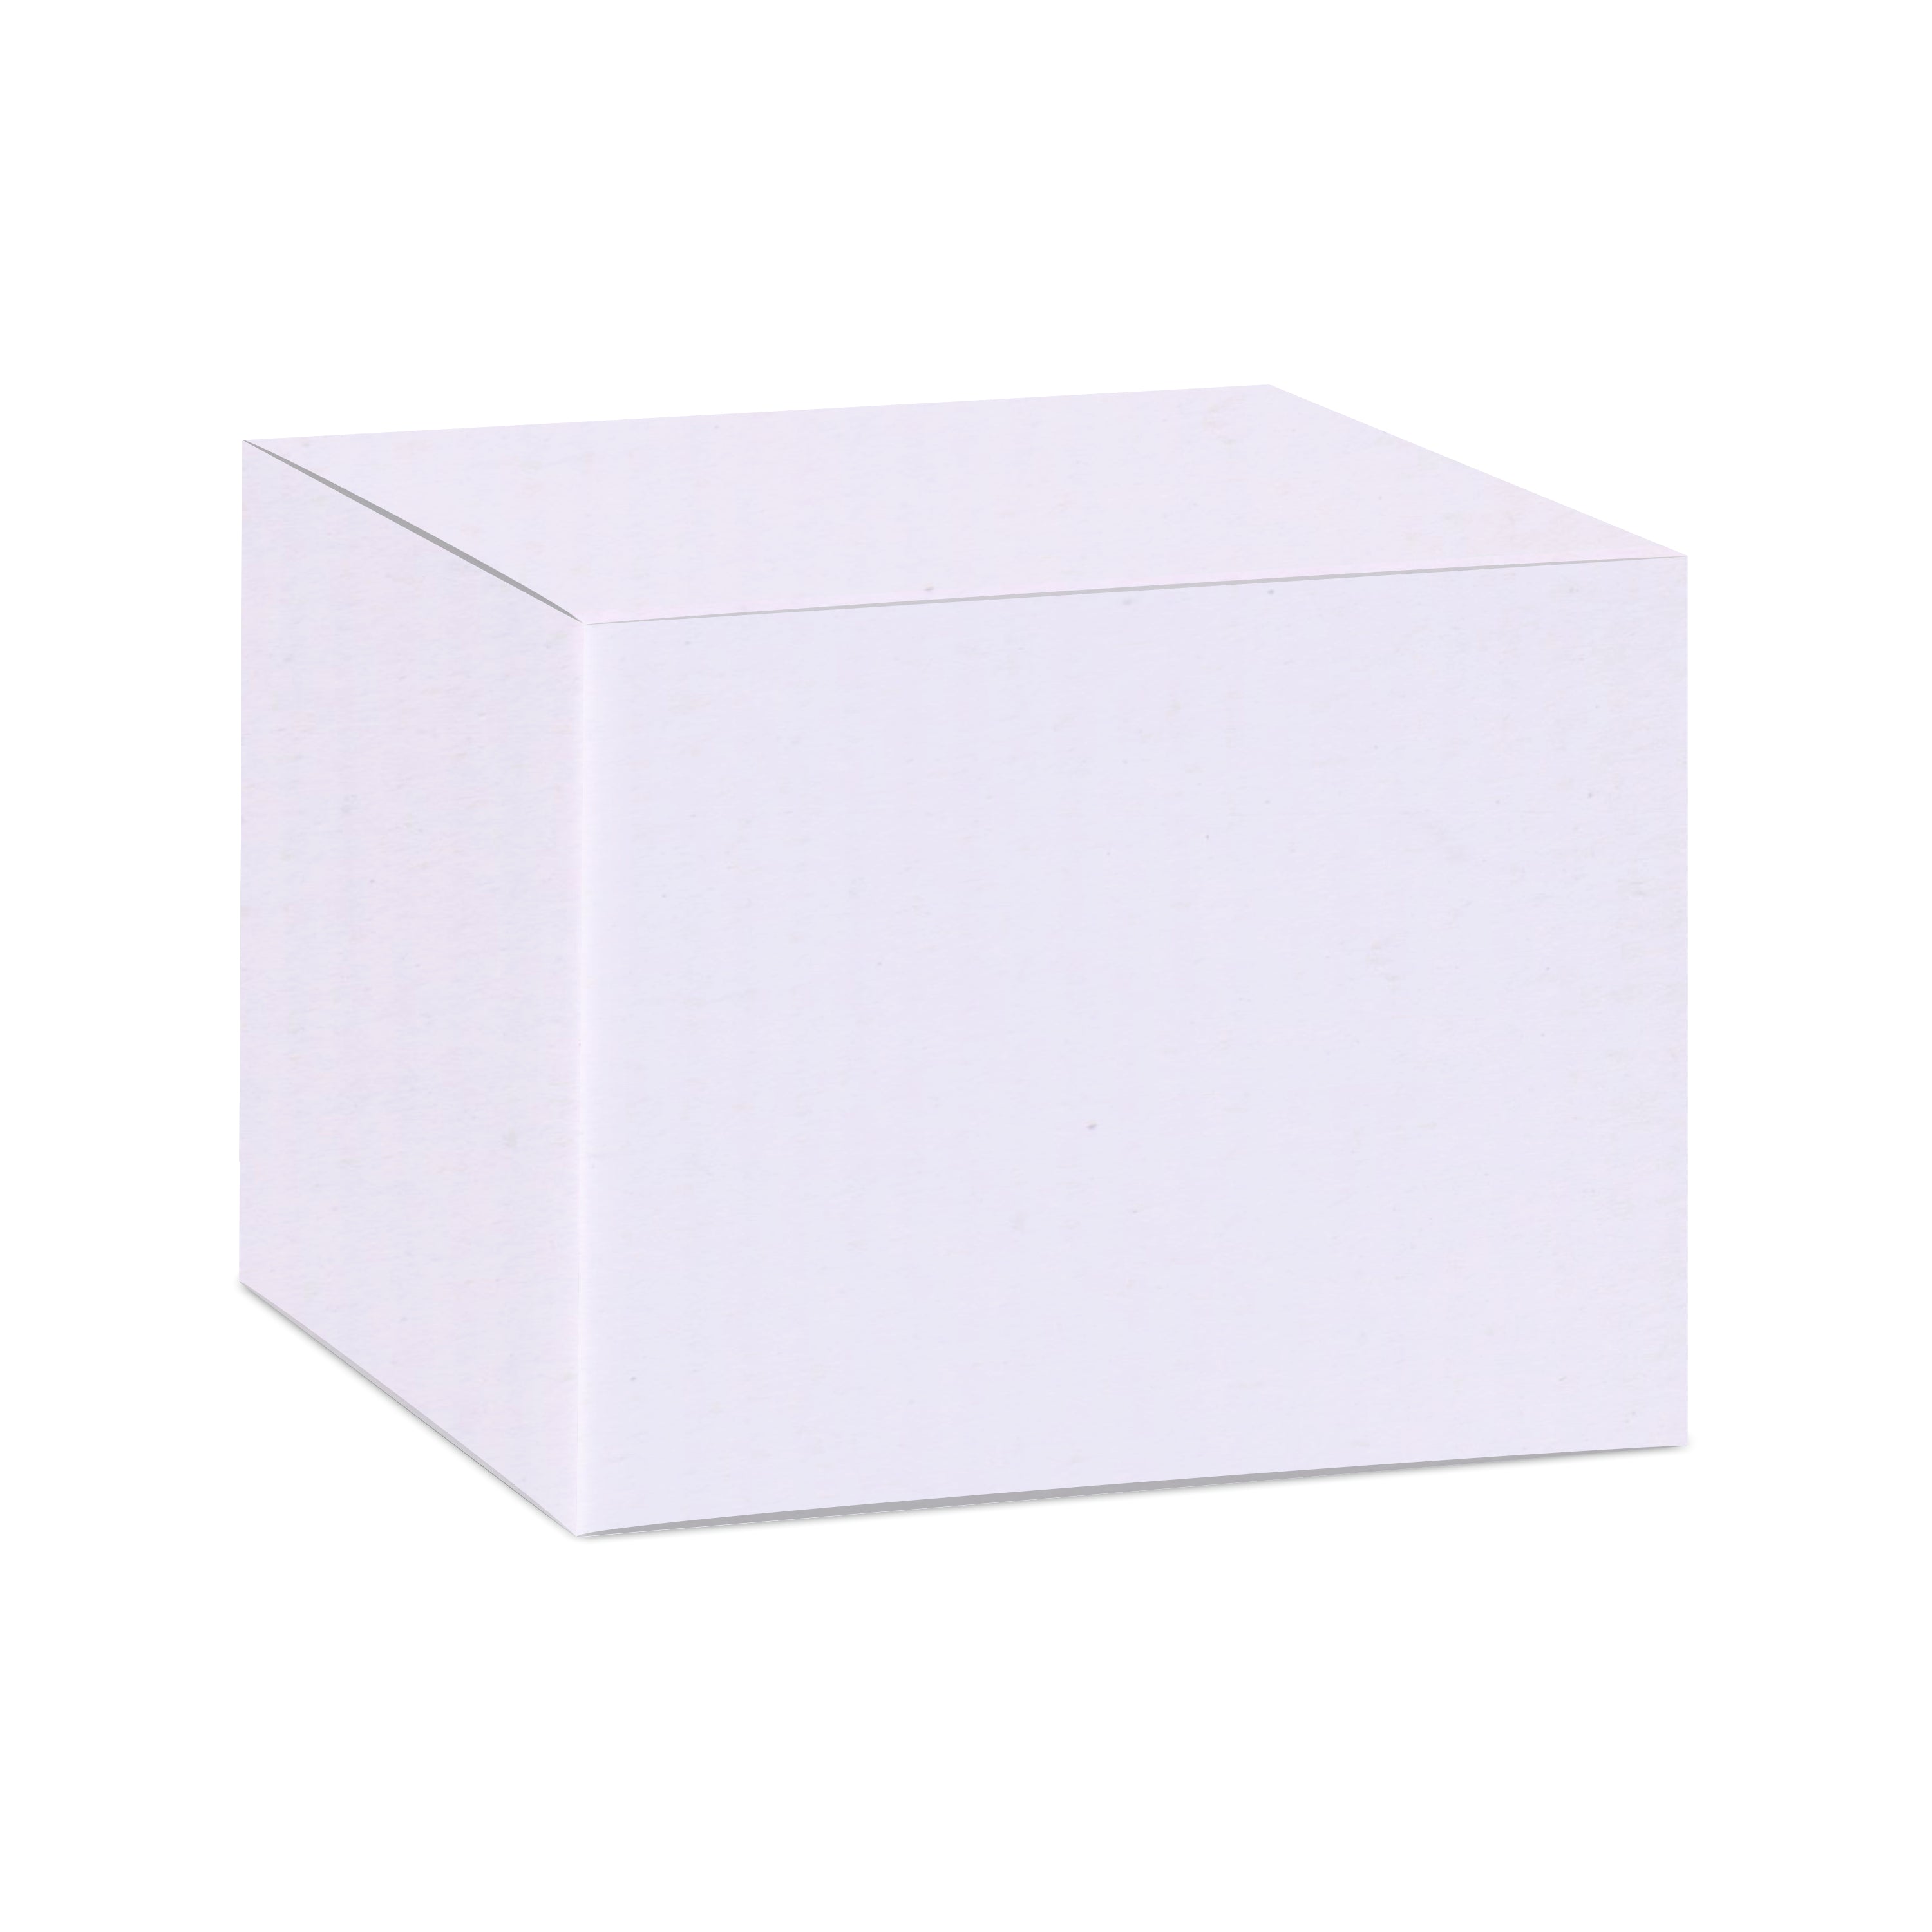 Zenvista Premium White Corrugated Box |7 x 7.3 x 7 cm | Pack of 50